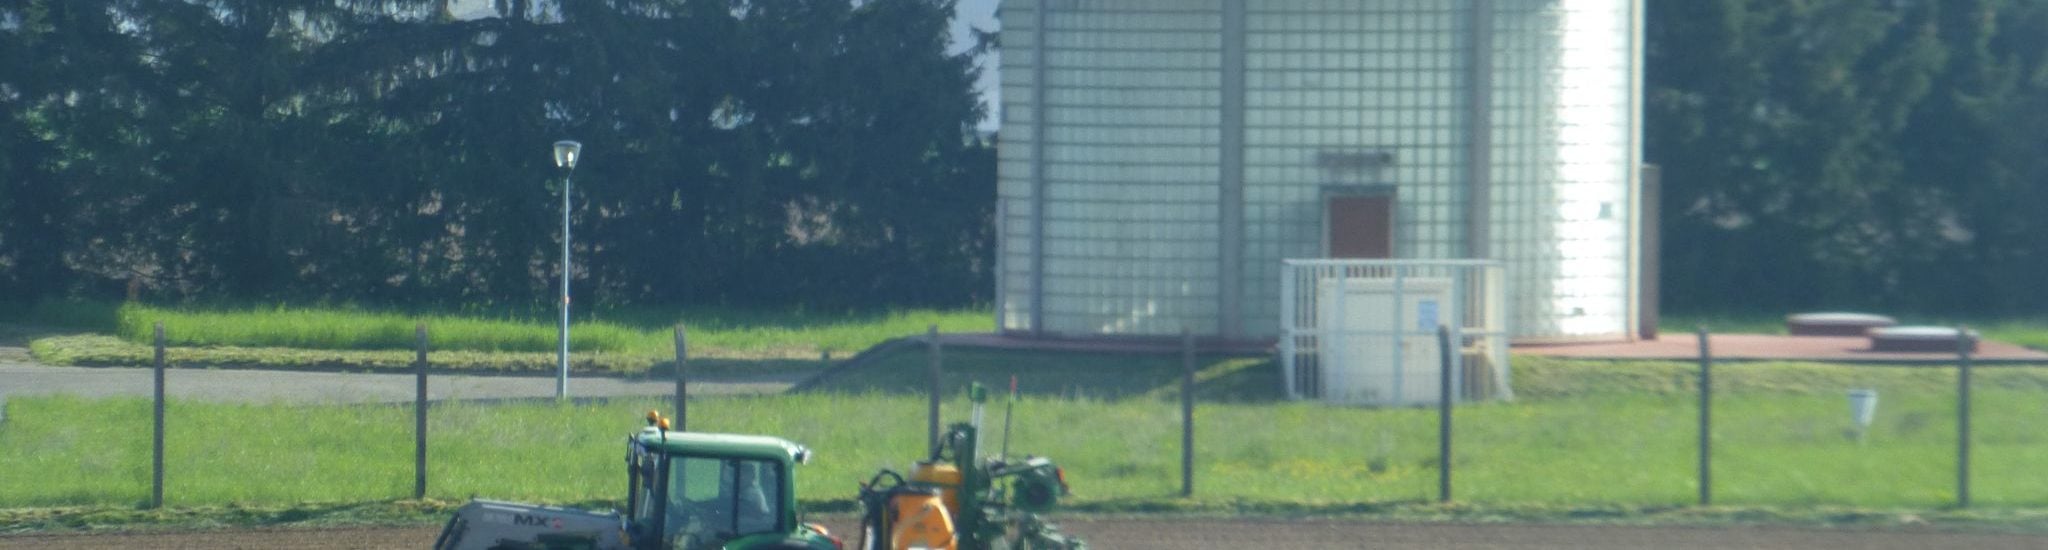 Sur les champs de captage de l’Eurométropole, les pesticides ne sont pas interdits